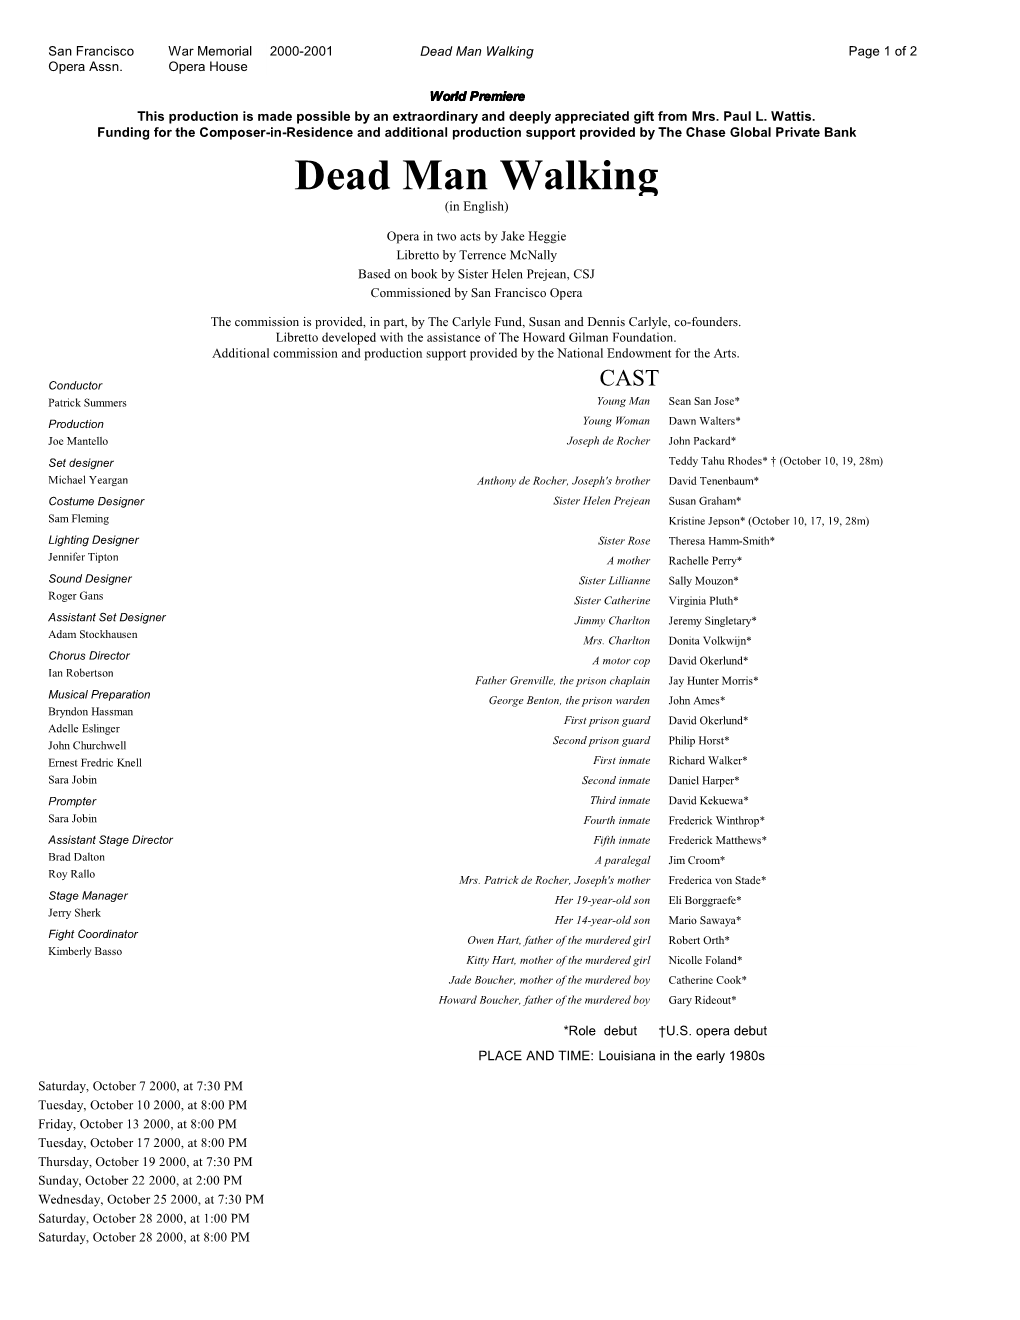 Dead Man Walking Page 1 of 2 Opera Assn